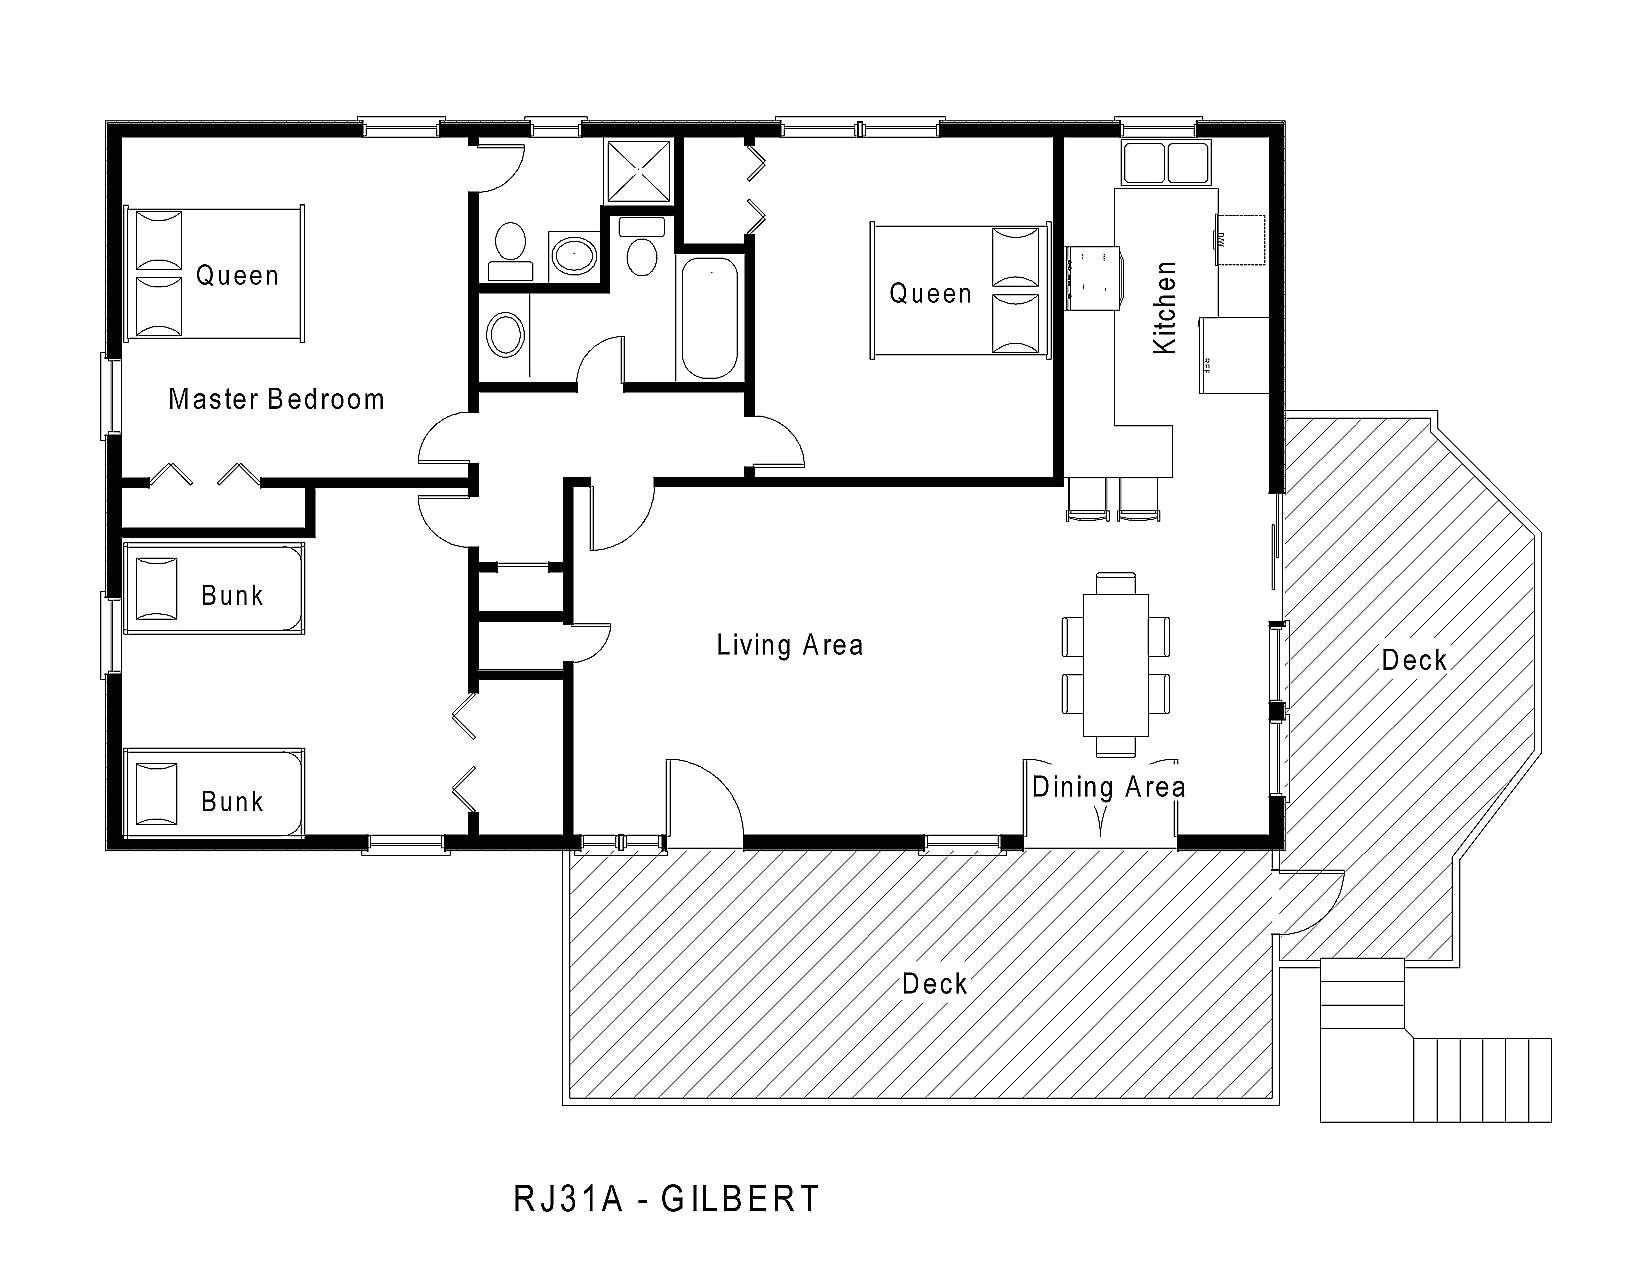 1 story beach house floor plans